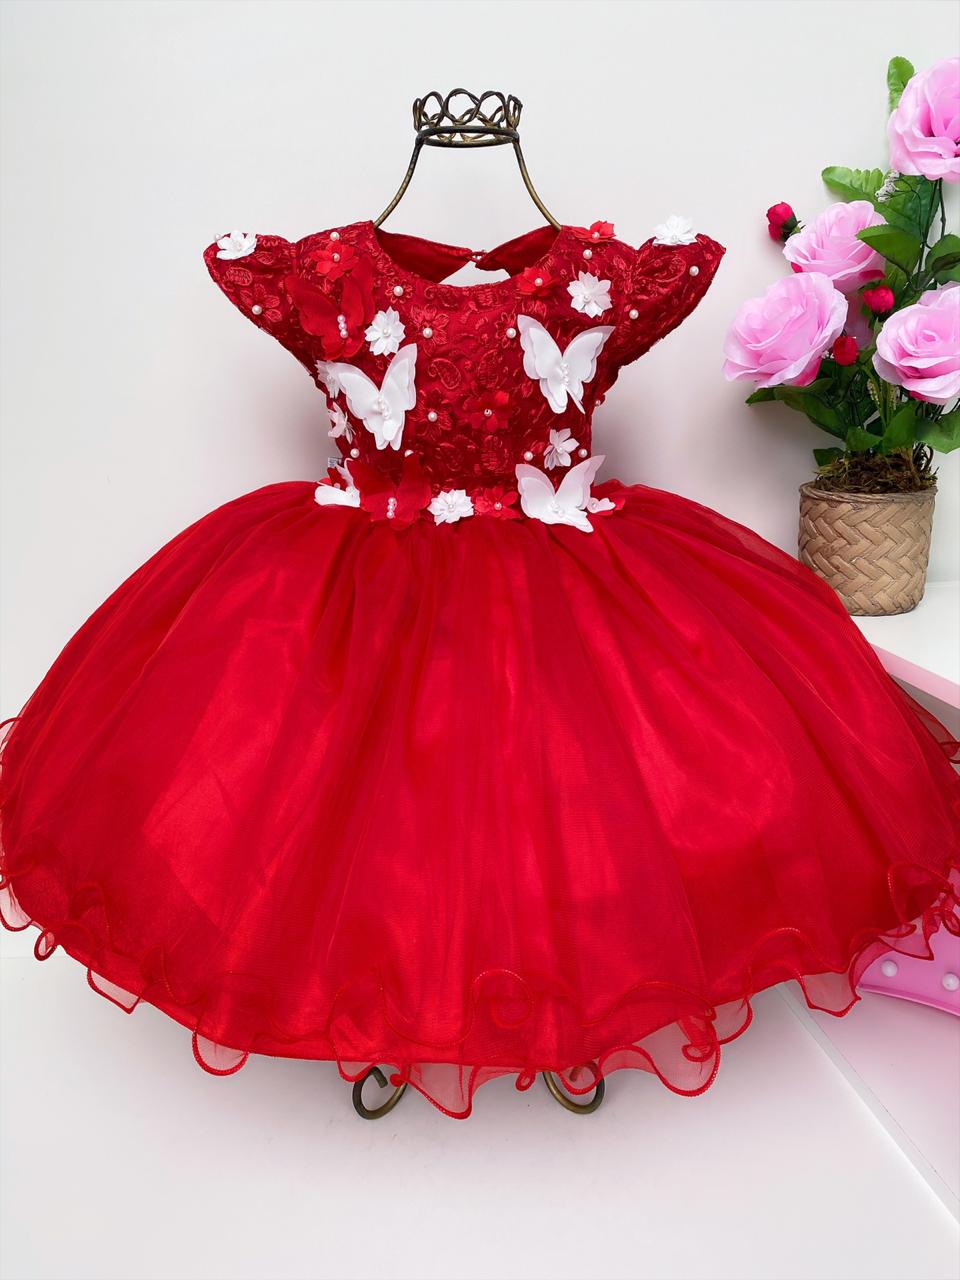 Vestido Infantil Vermelho Pérolas Renda Aplique Borboletas